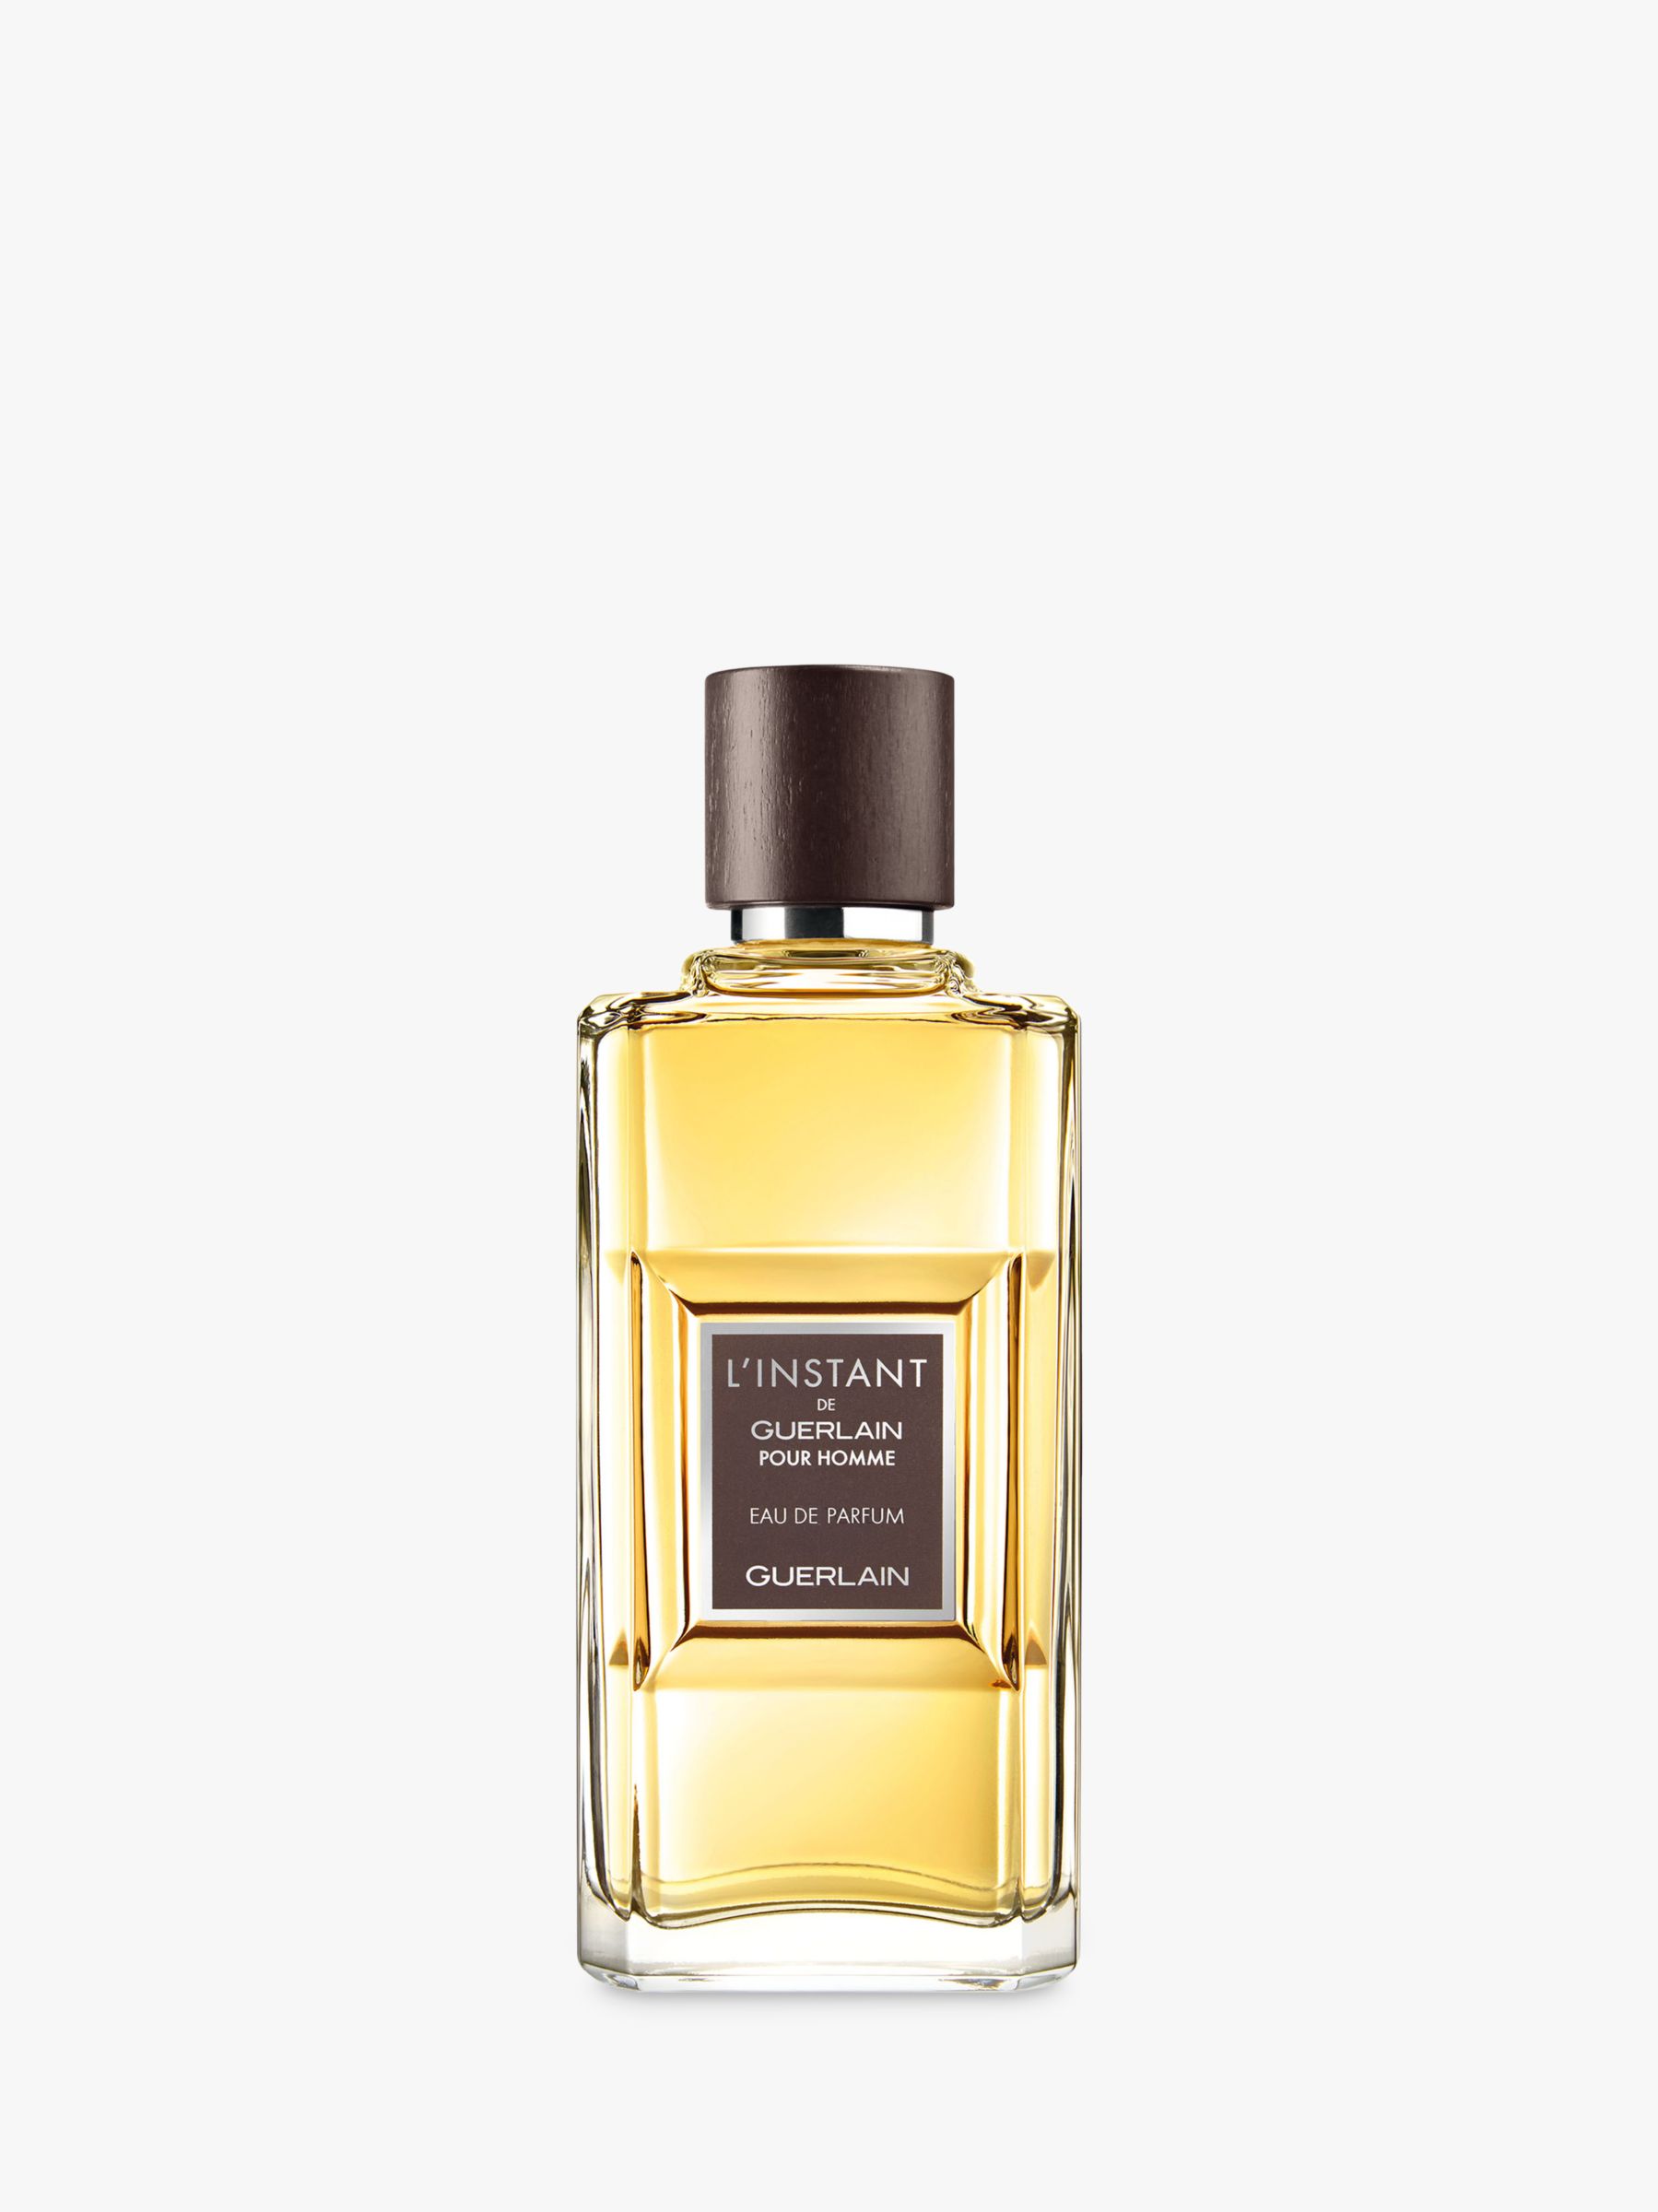 Guerlain L'Instant de Guerlain Pour Homme Eau de Parfum, 100ml at John ...